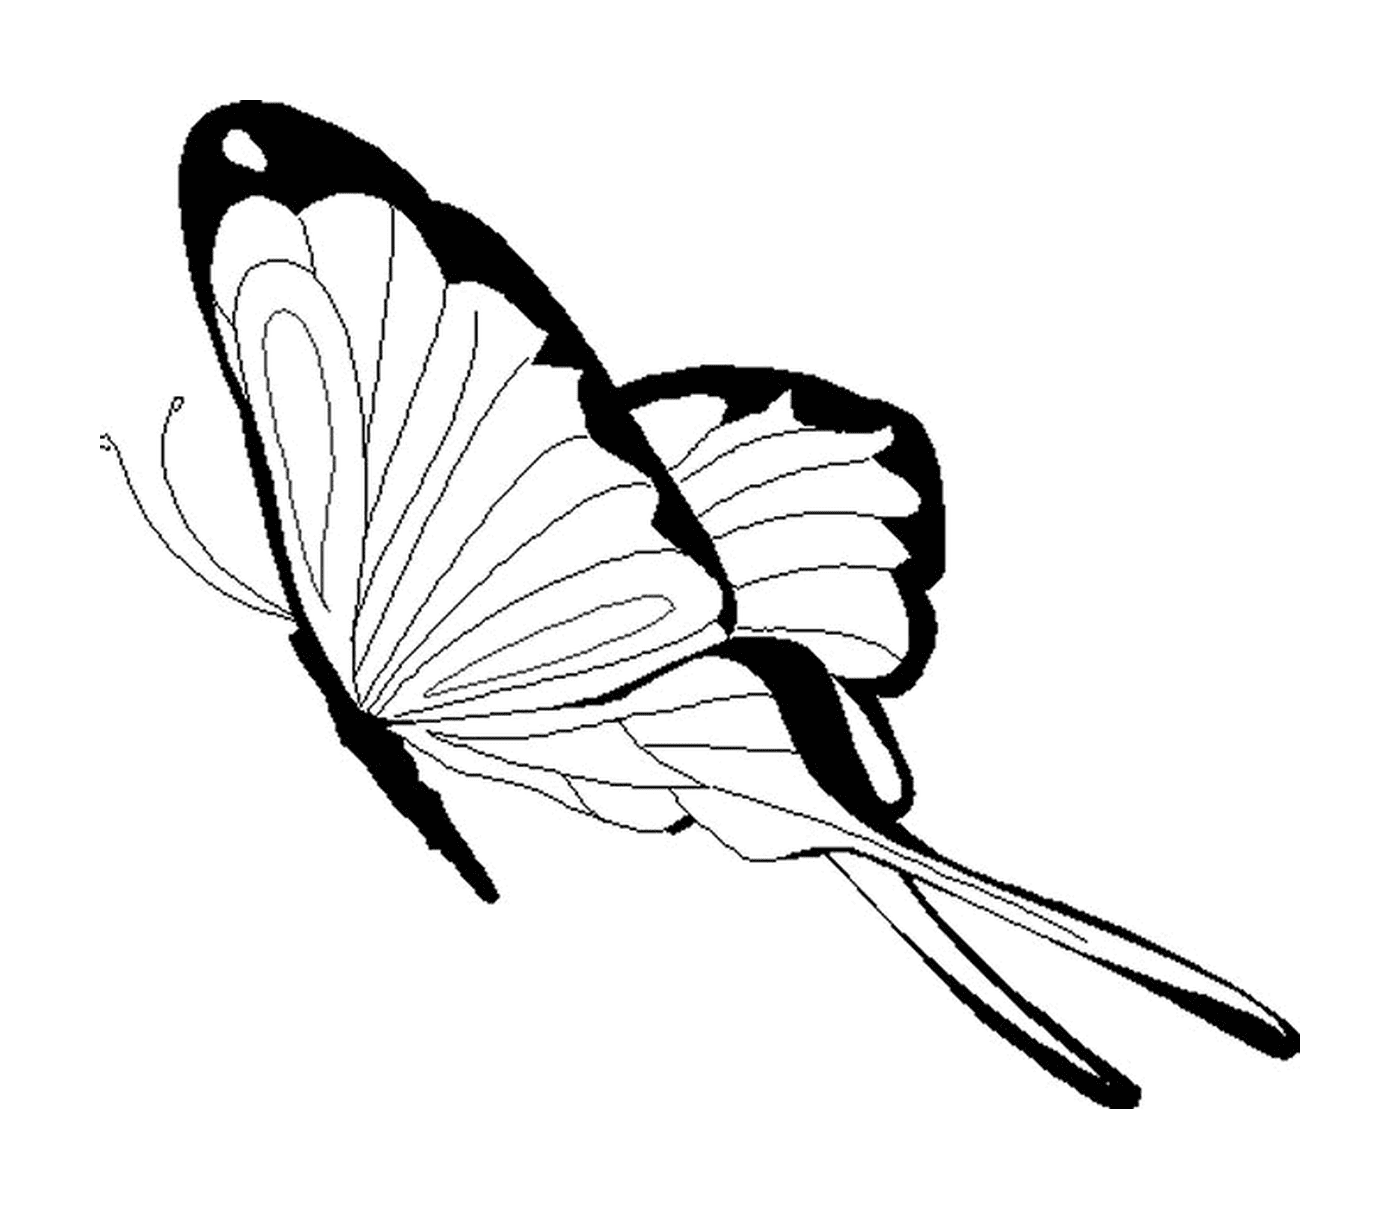   papillon avec ailes déployées 